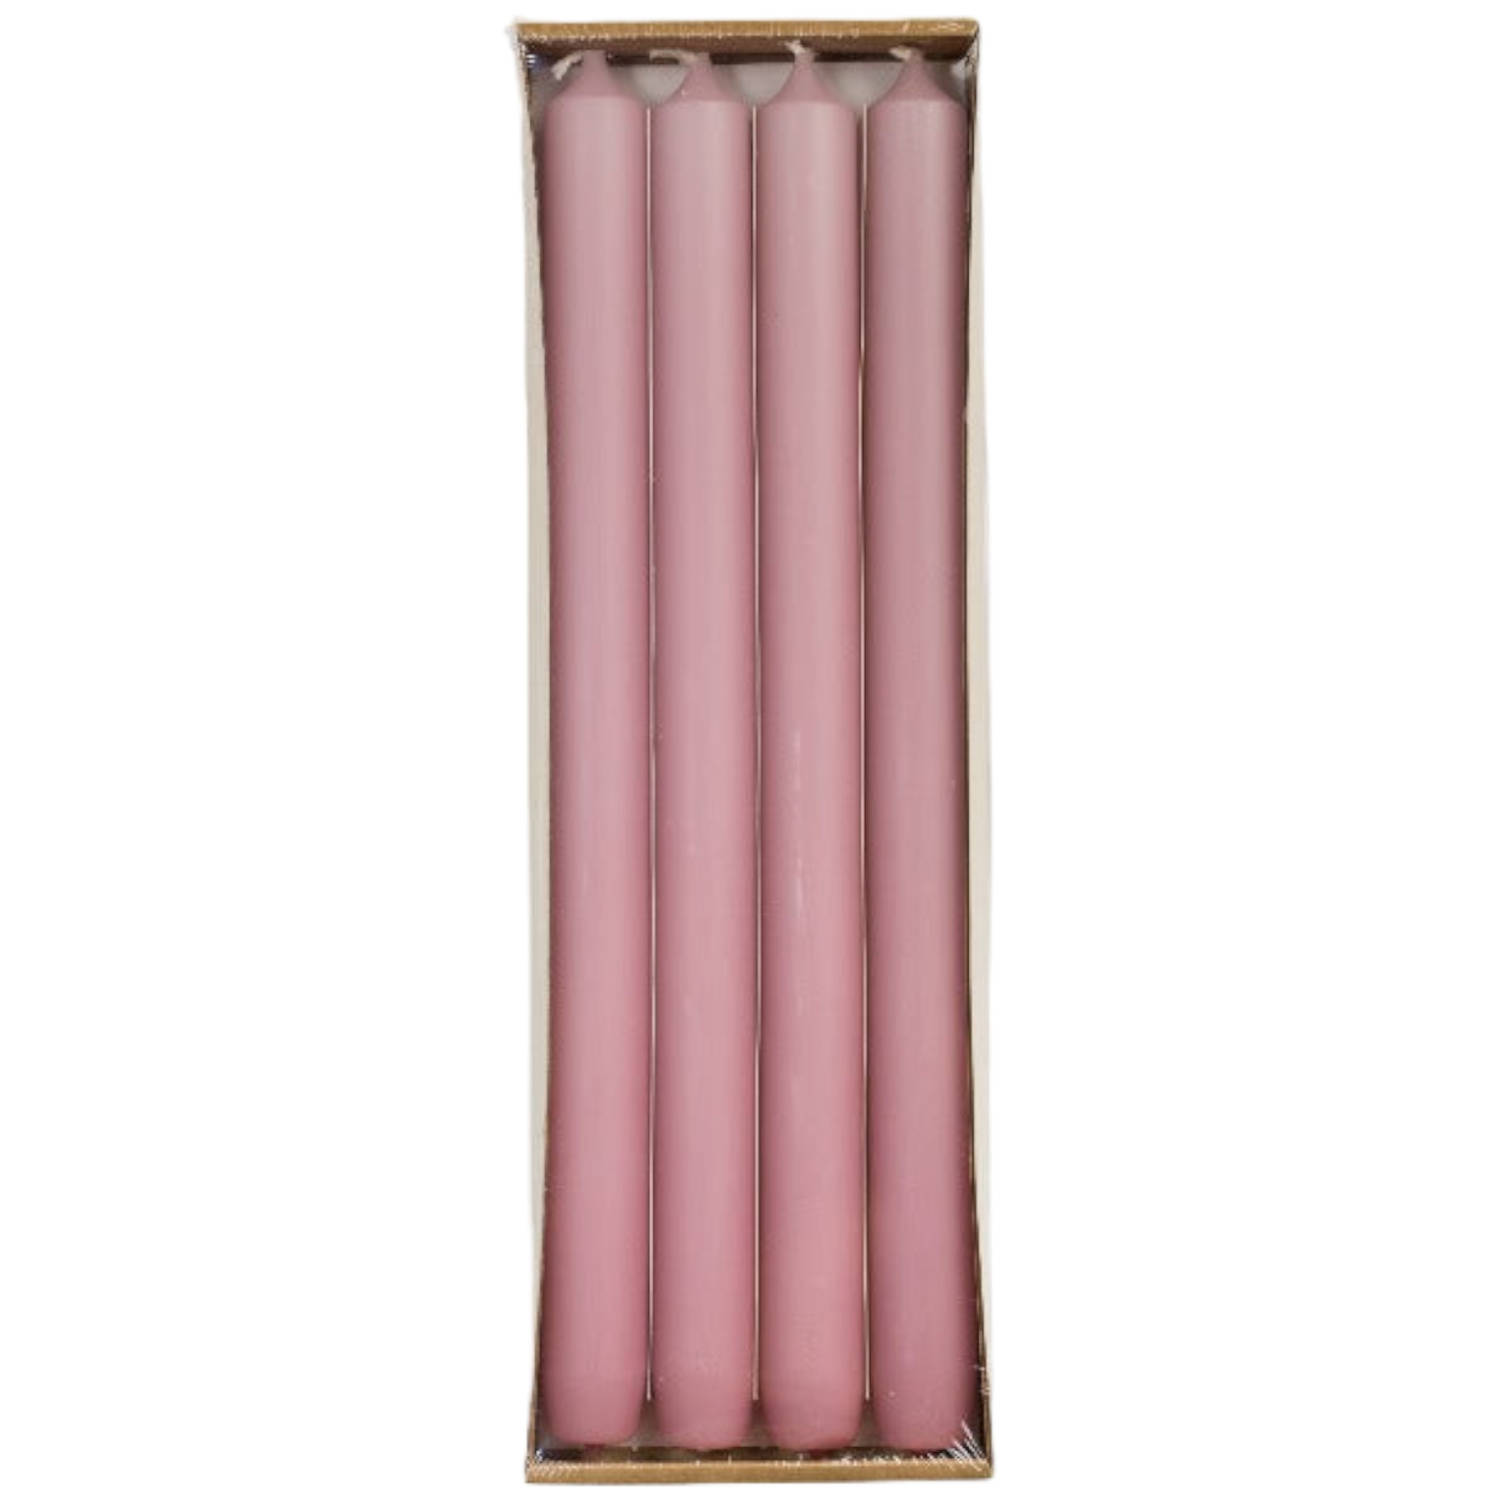 Rustik Lys - Lange dinerkaarsen 'Mat' - Pink, Ø 2.1 x 29cm, set van 4